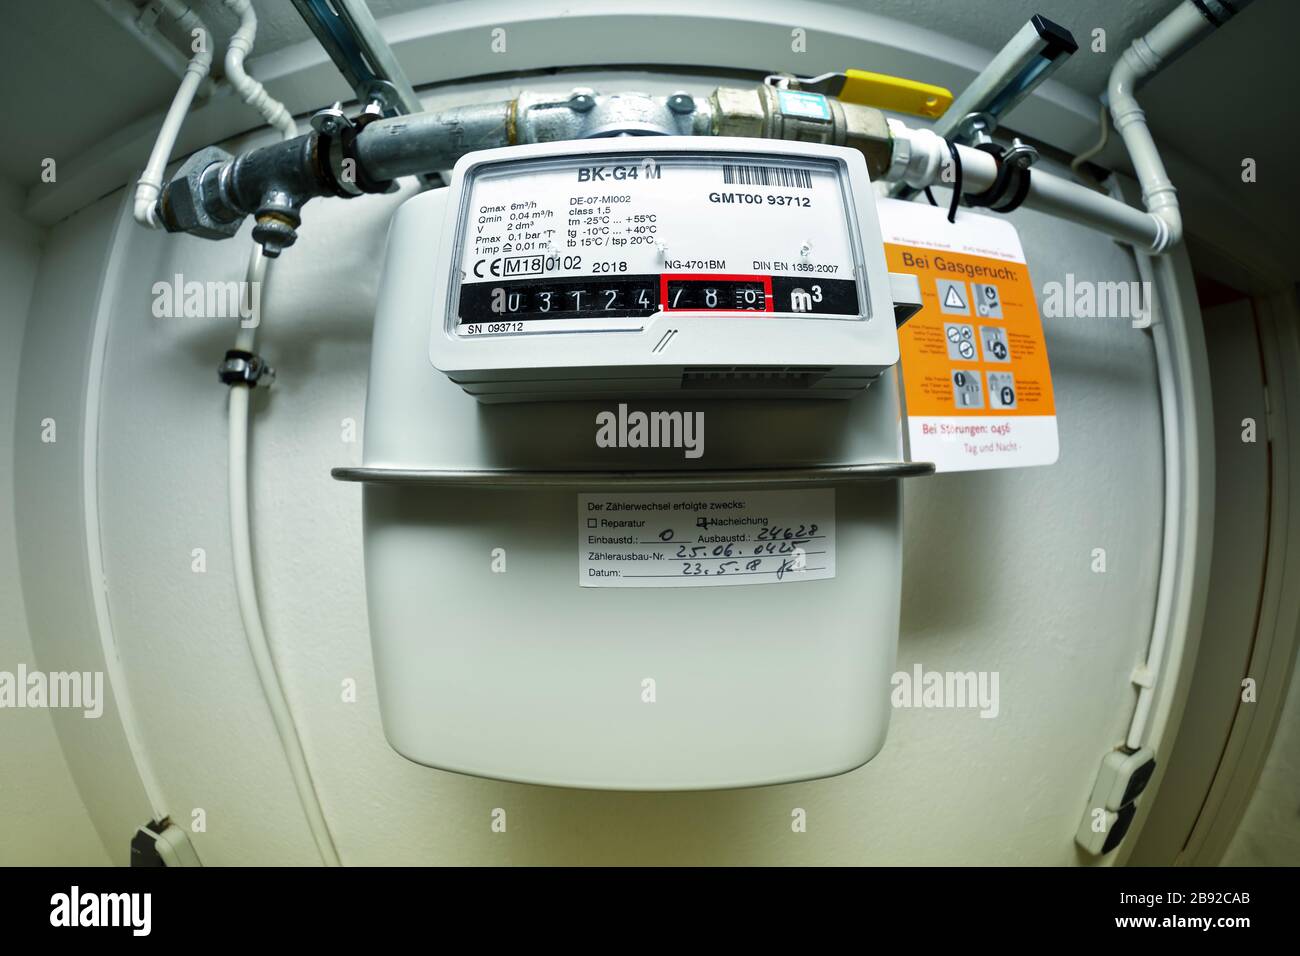 Gas metre of a heating system, Gaszähler einer Heizungsanlage Stock Photo